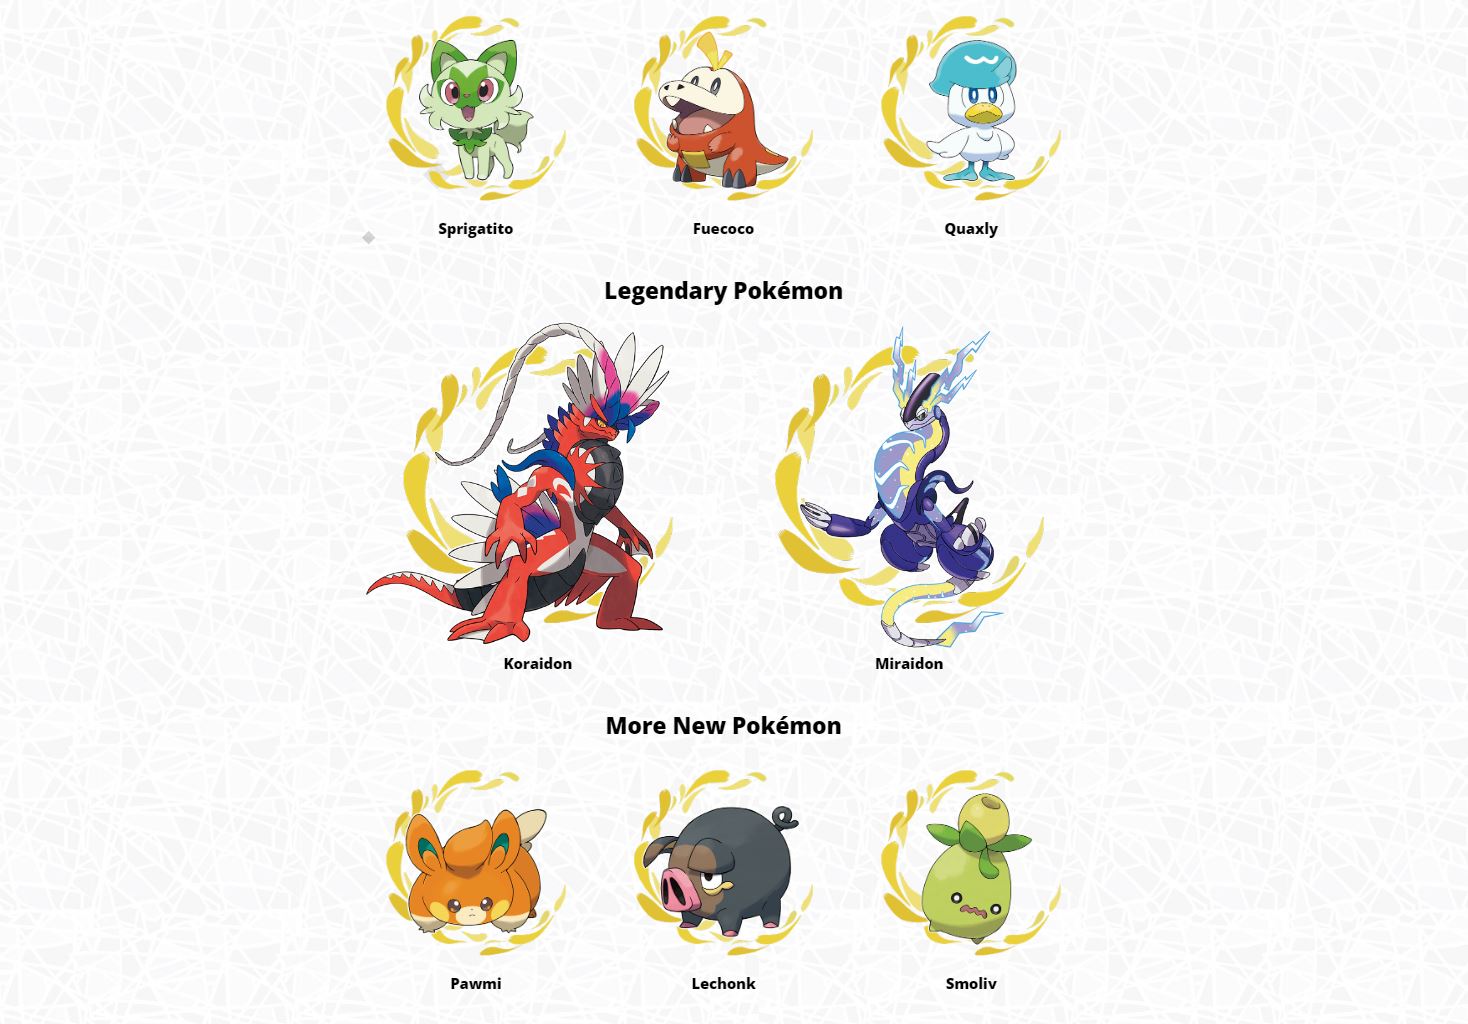 Trzy startery, dwie legendy oraz trzy losowe stworki - oto nowości w serii Pokemon